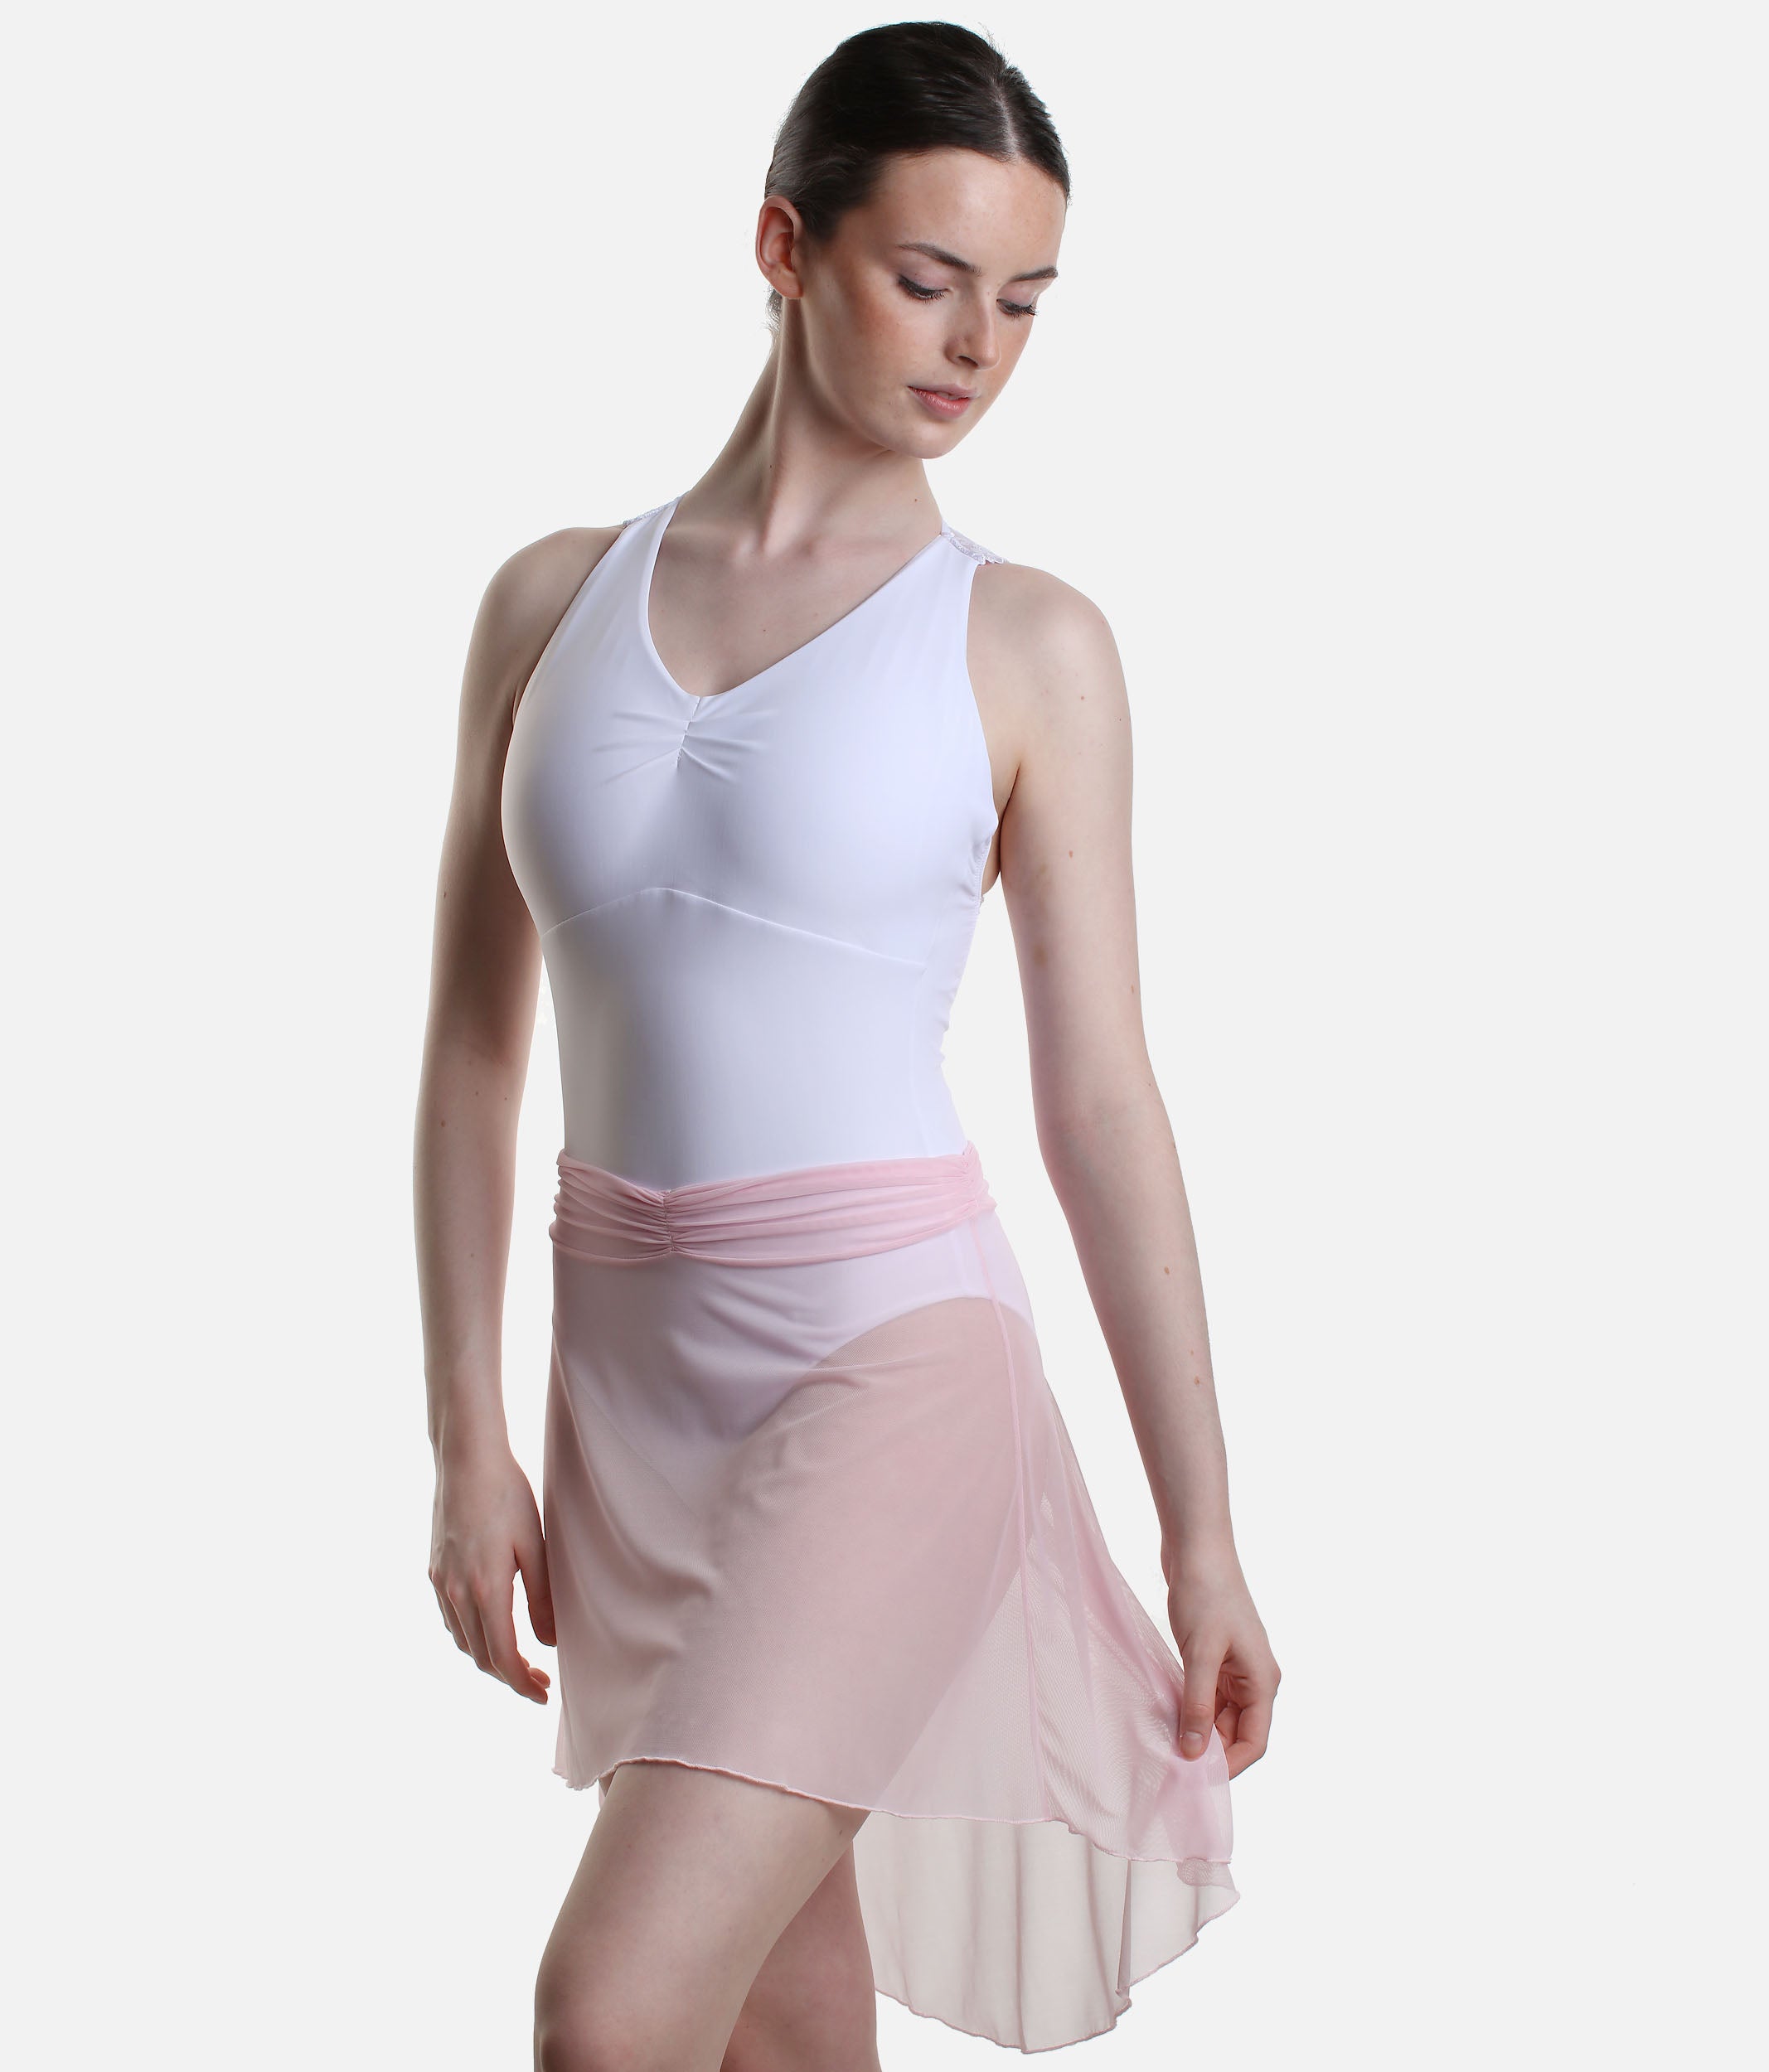 Pull On Dance Skirt, High-Low Design - MILLIE